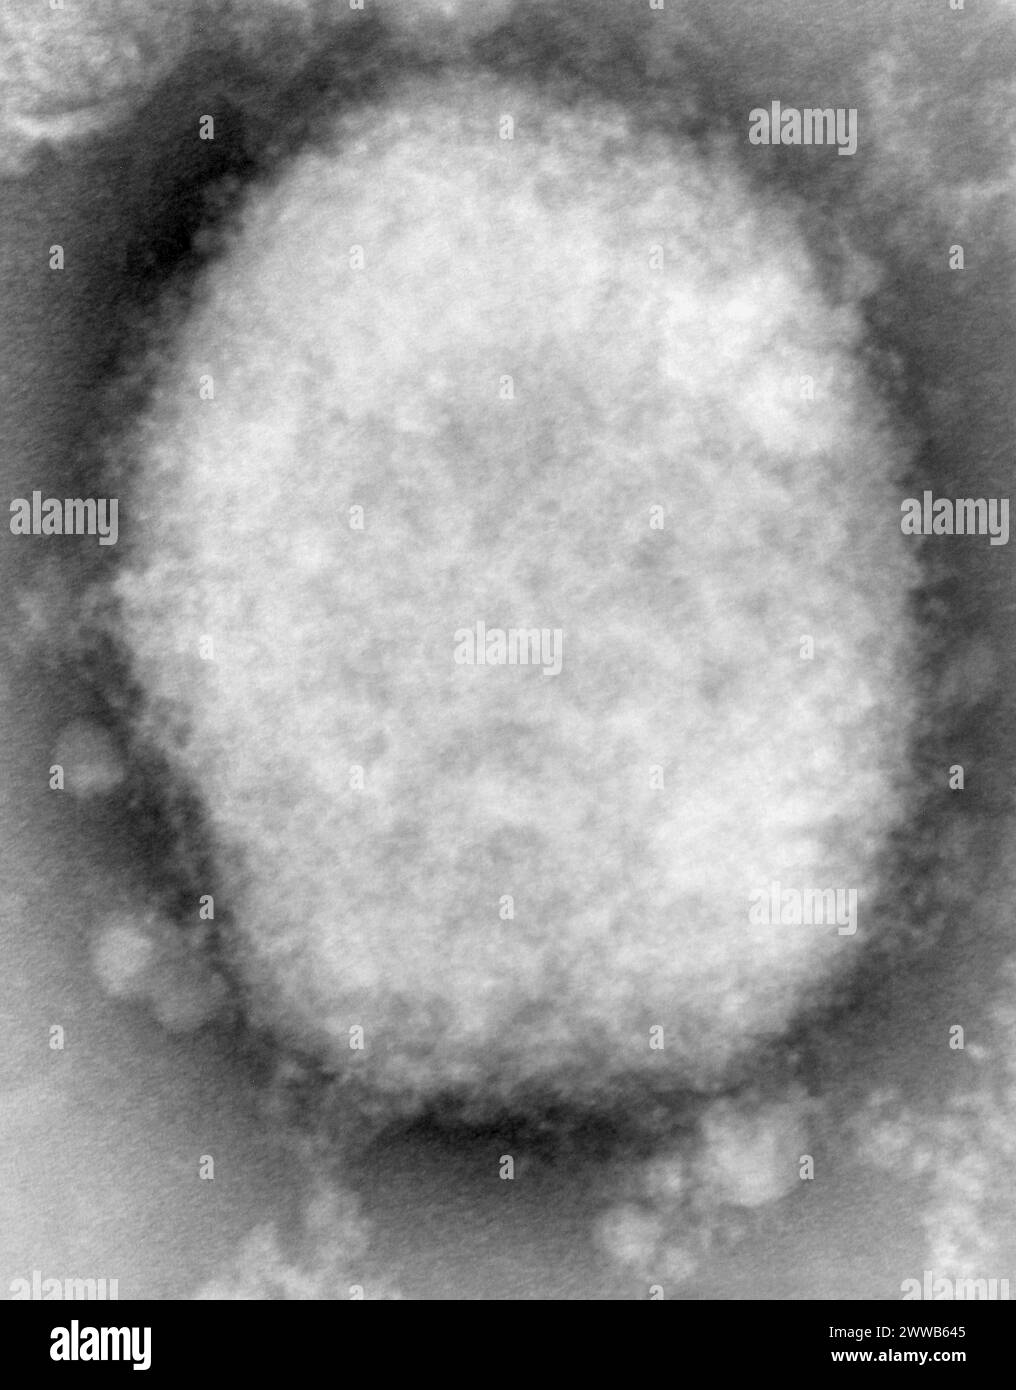 Esta imagen de micrografía electrónica de transmisión de puntos negativos (TEM) altamente ampliada revela un virus de la viruela monkeypox tipo M, o morera. Foto de stock